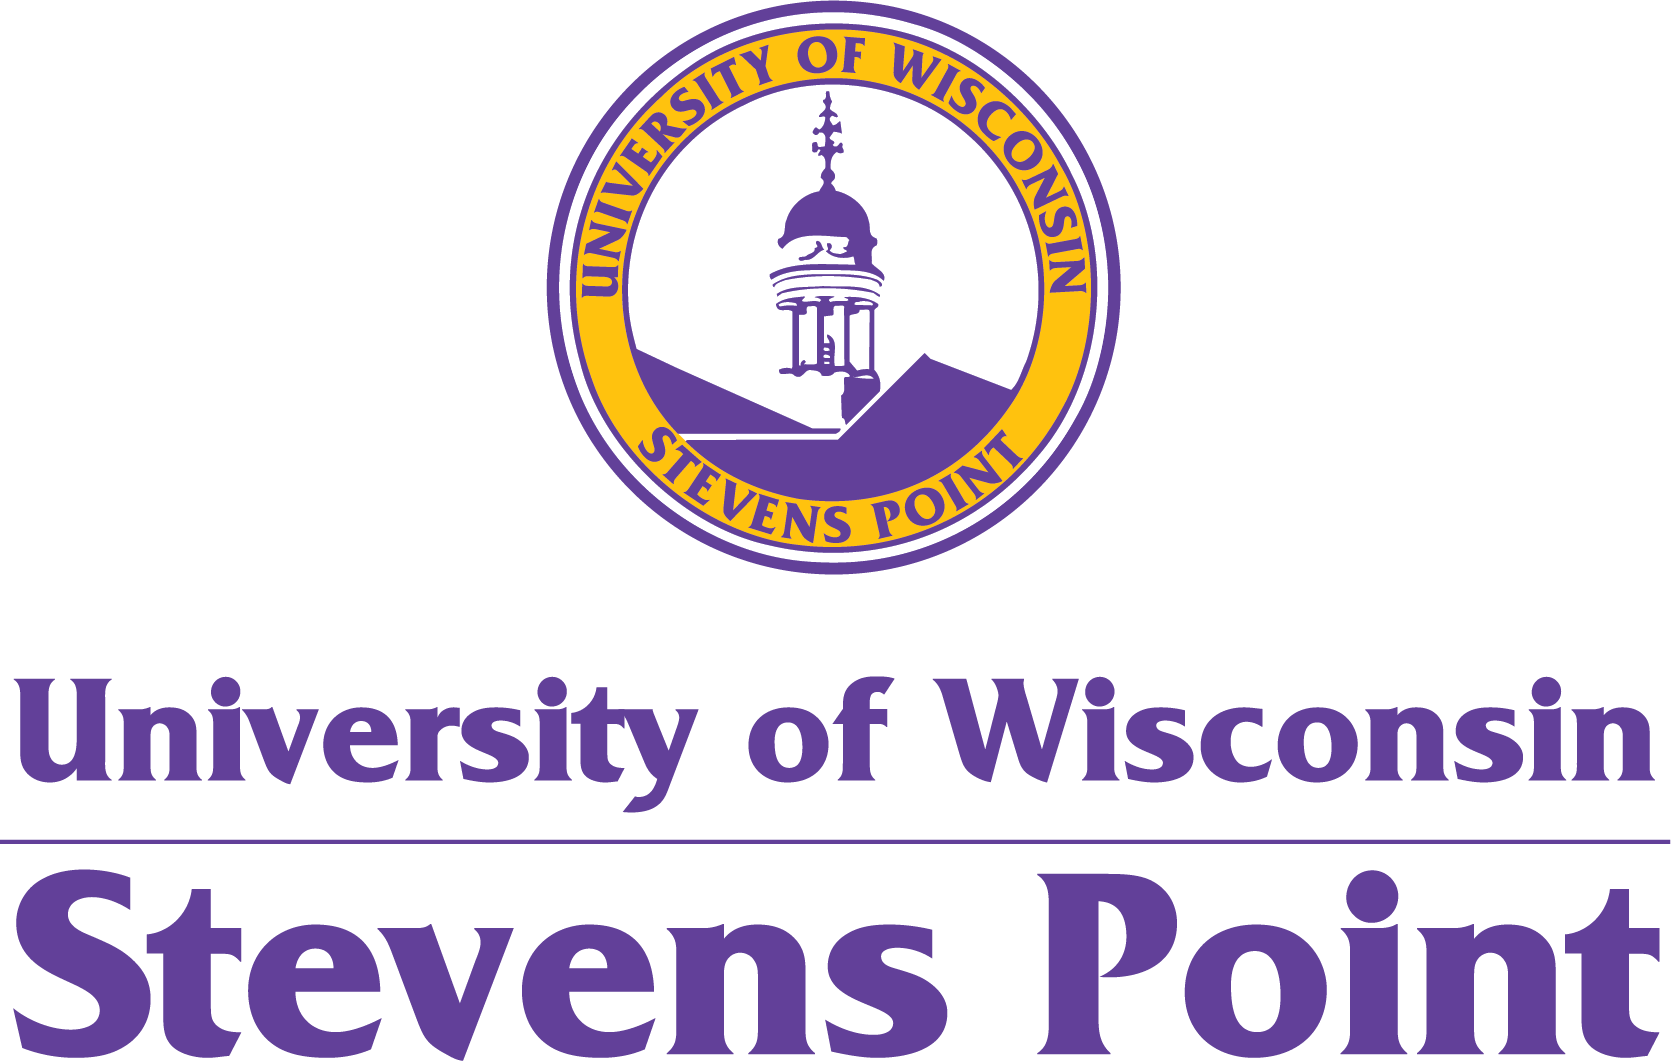 UW-Stevens Point logo